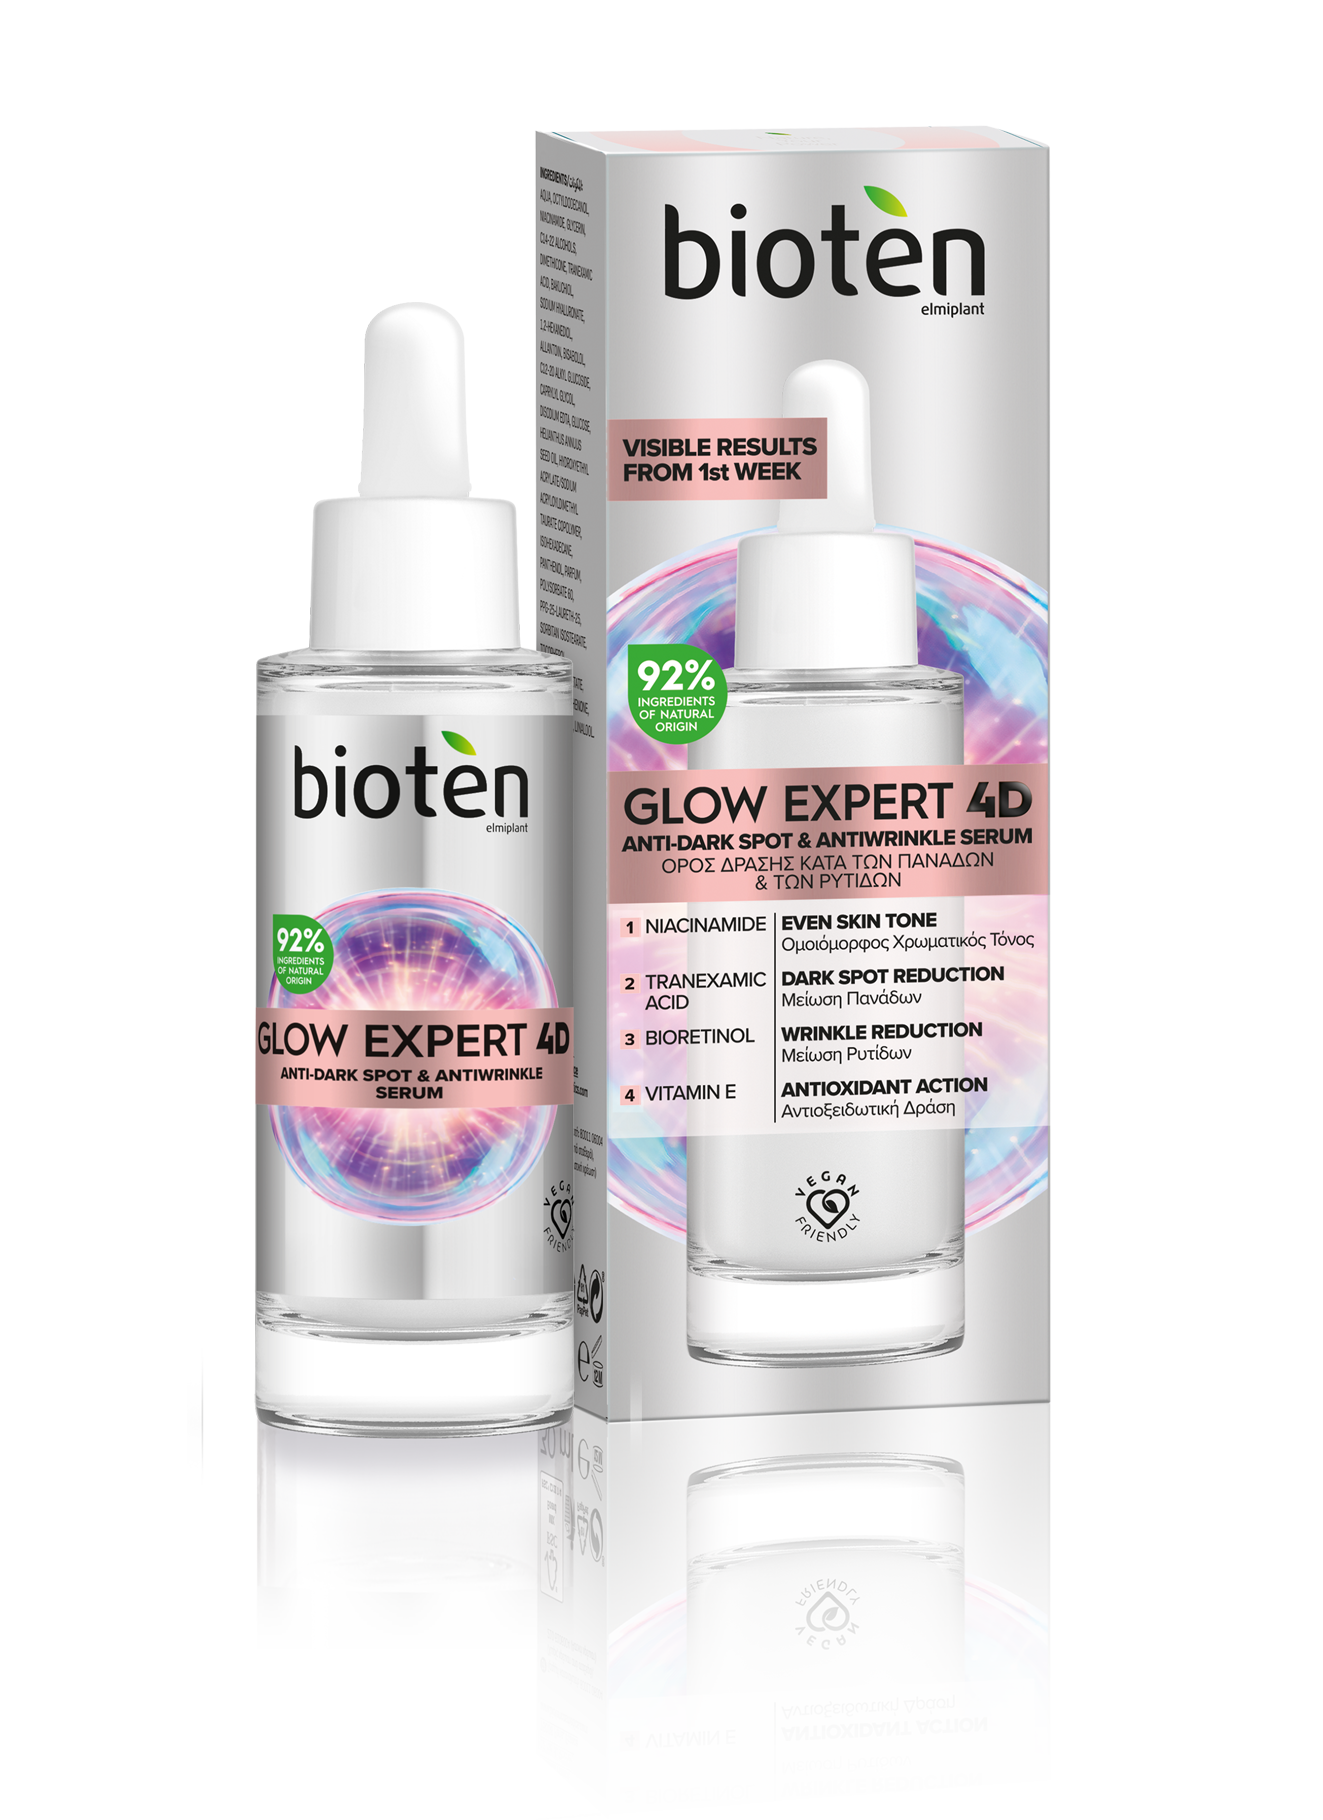 Νέο λανσάρισμα για το bioten με την σειρά Glow Expert 4D